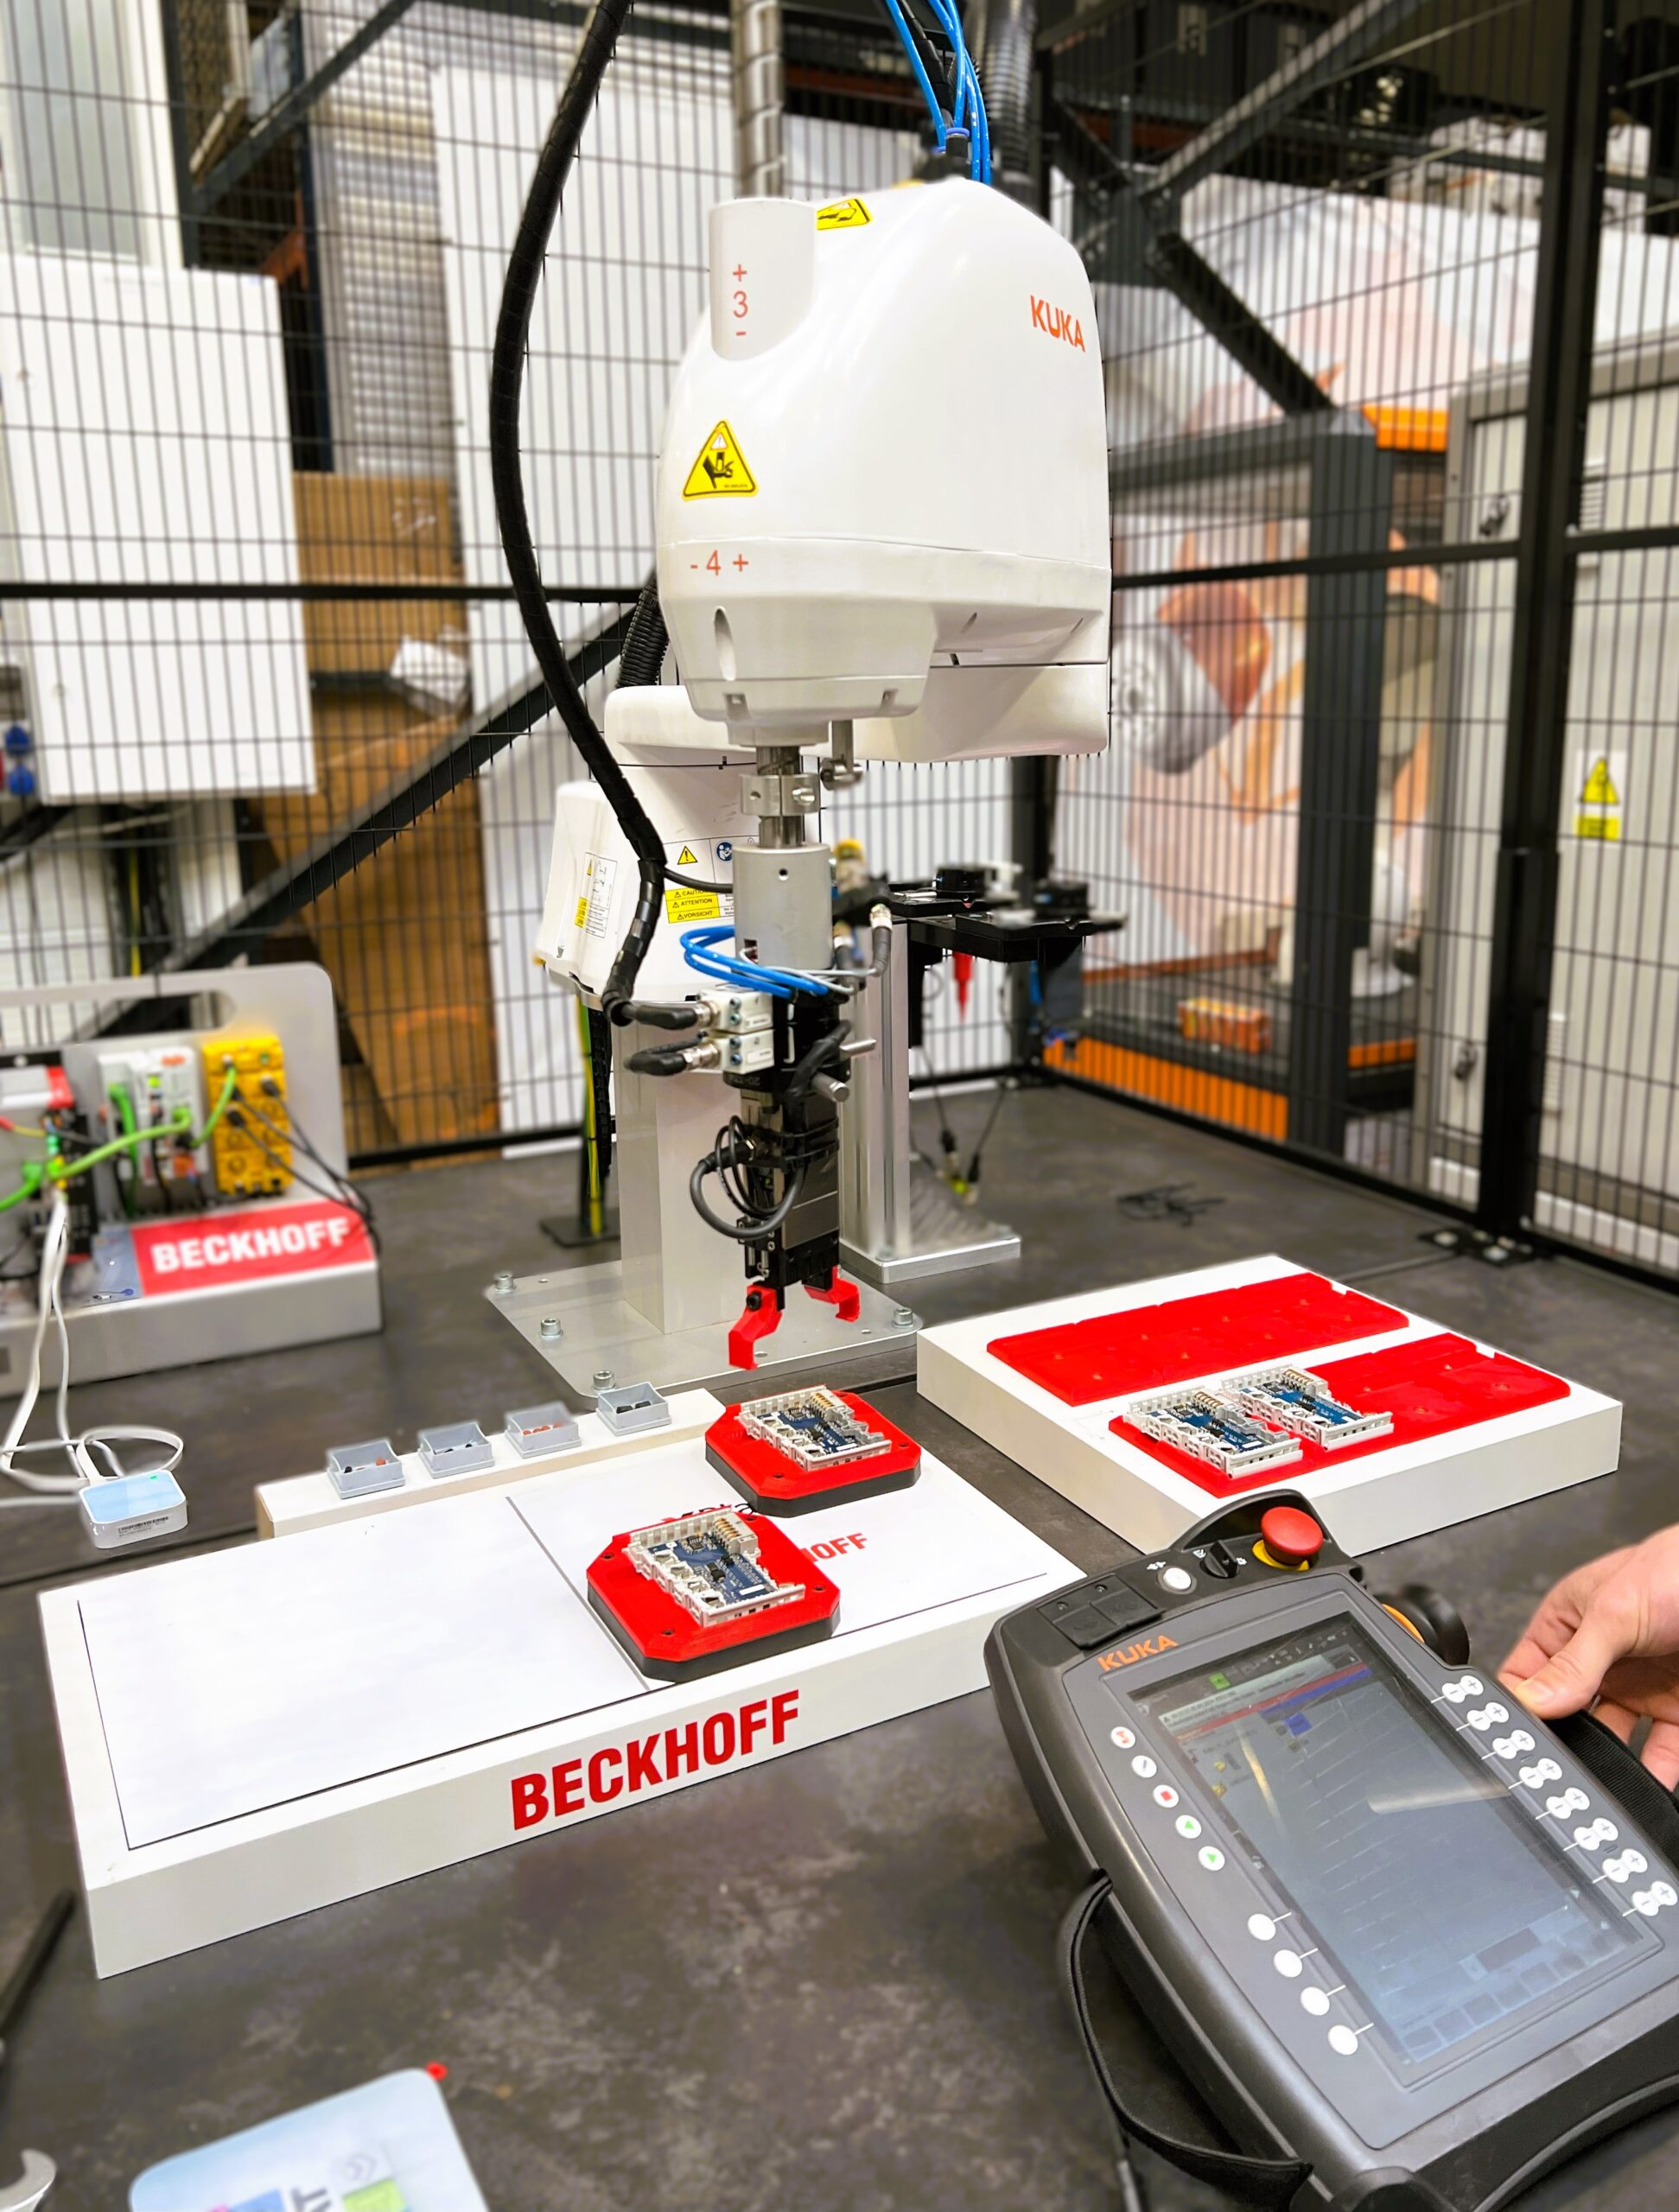 Automatyzacja i robotyzacja przemysłu zapewnia rozwiązania automatyzujące procesy produkcyjne.